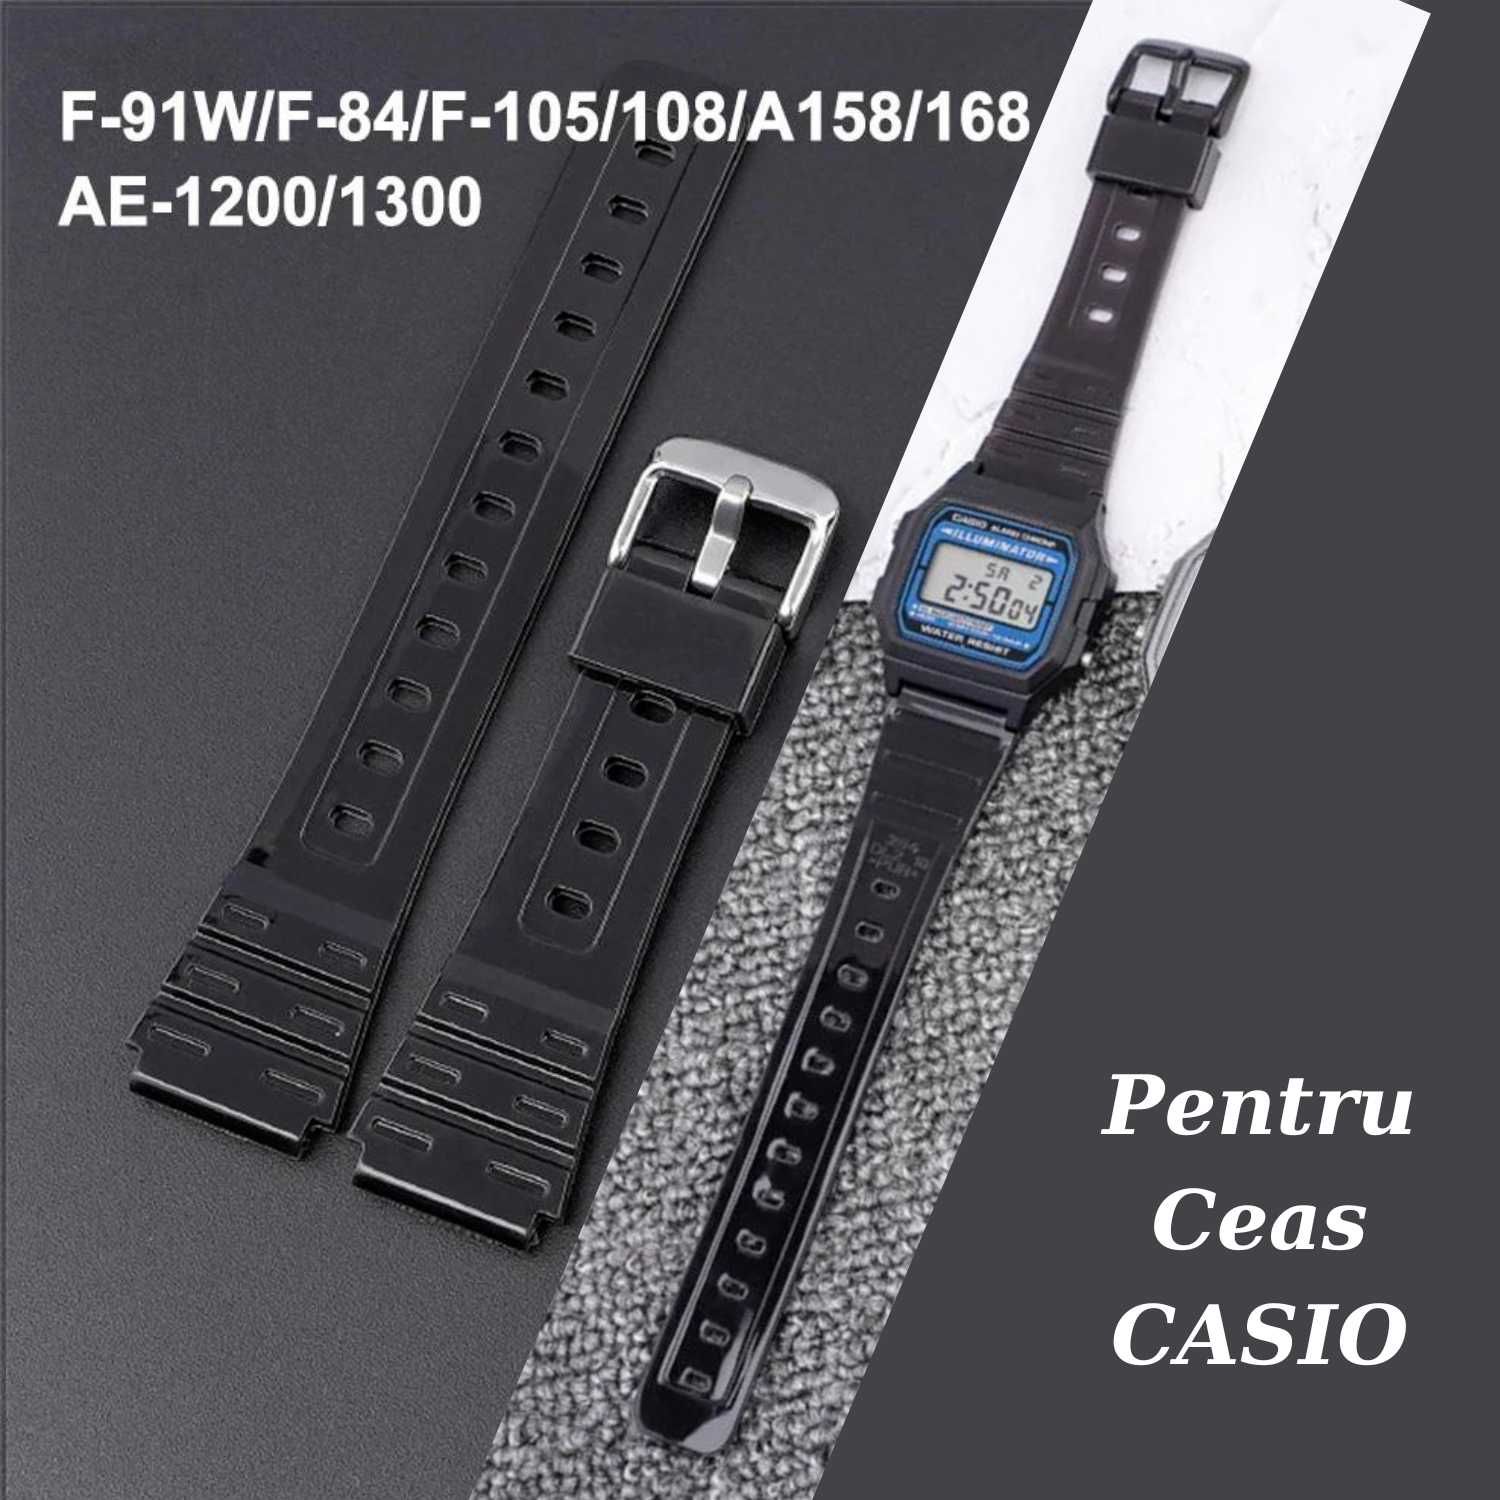 Curea ceas Casio neagra pentru W752, W-753, W755, F-91W, F84, F105 etc